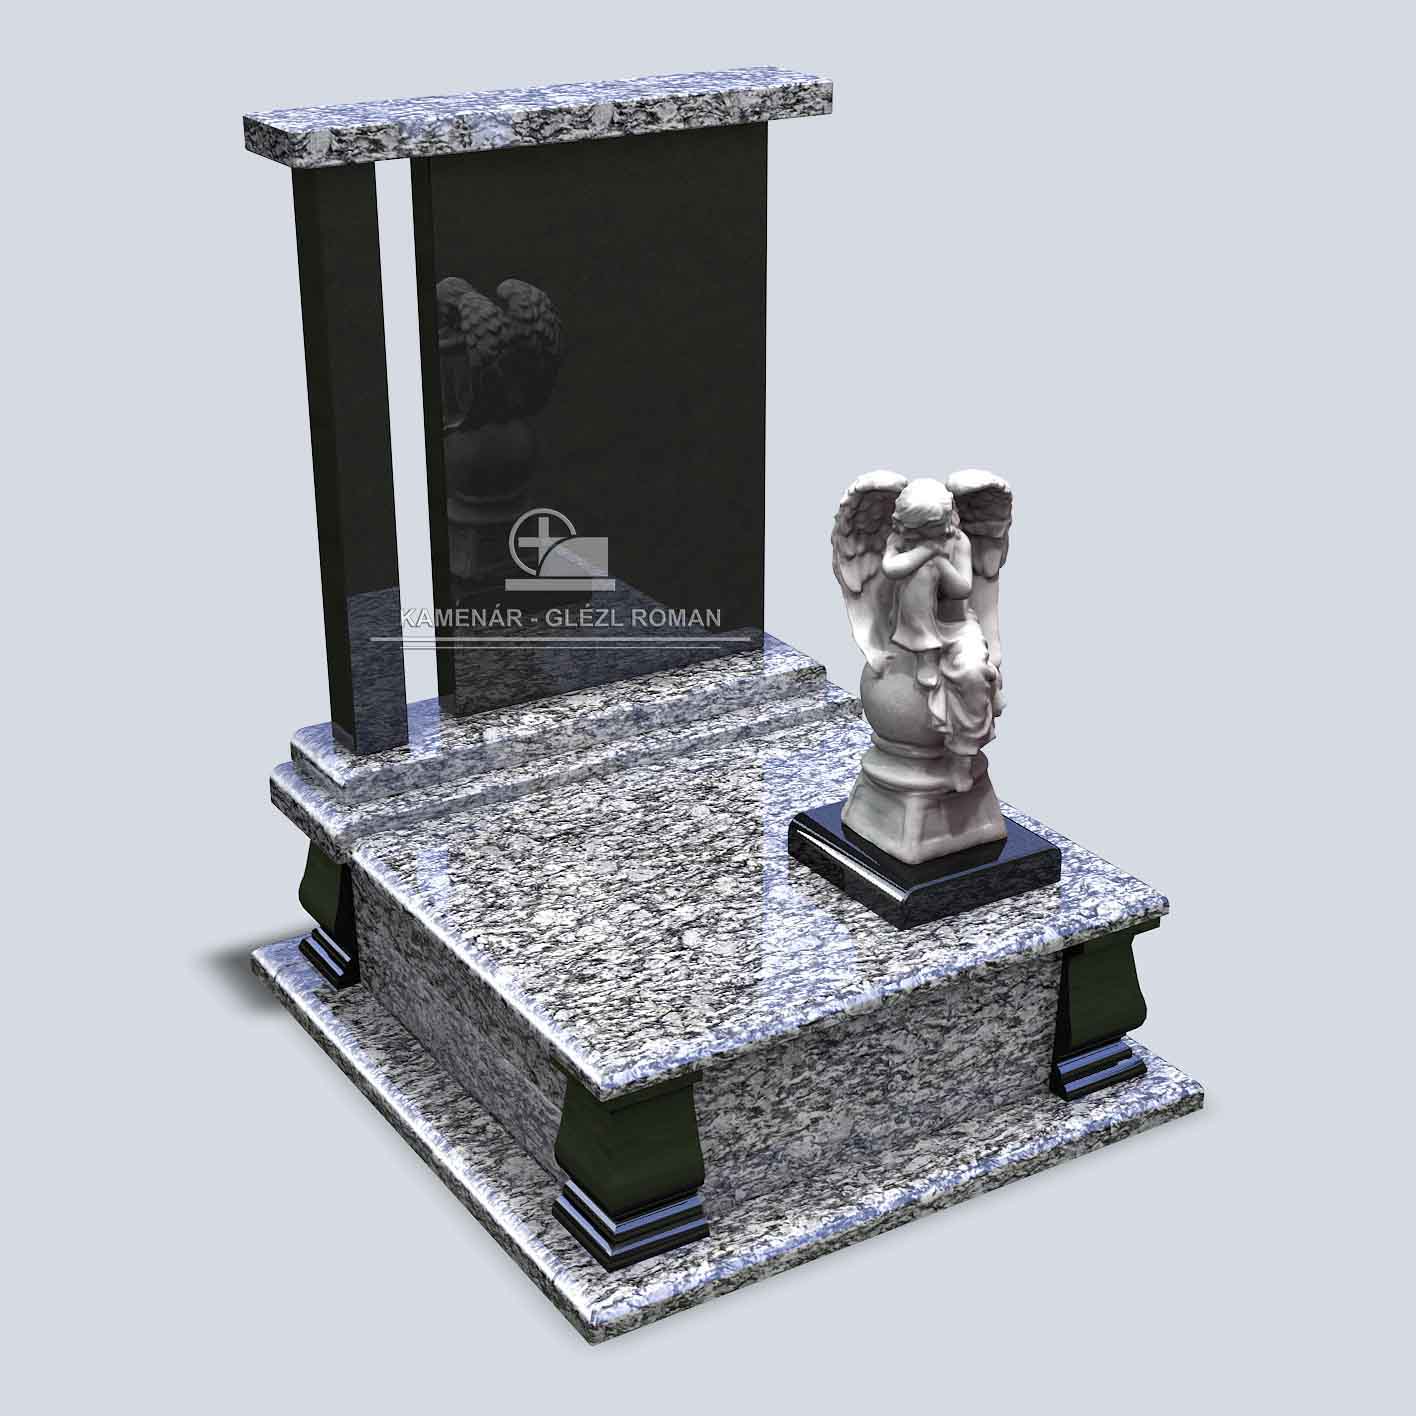 Urnový pomník zo žuly v bledočiernom vyhotovení so sochou anjela na podstavci